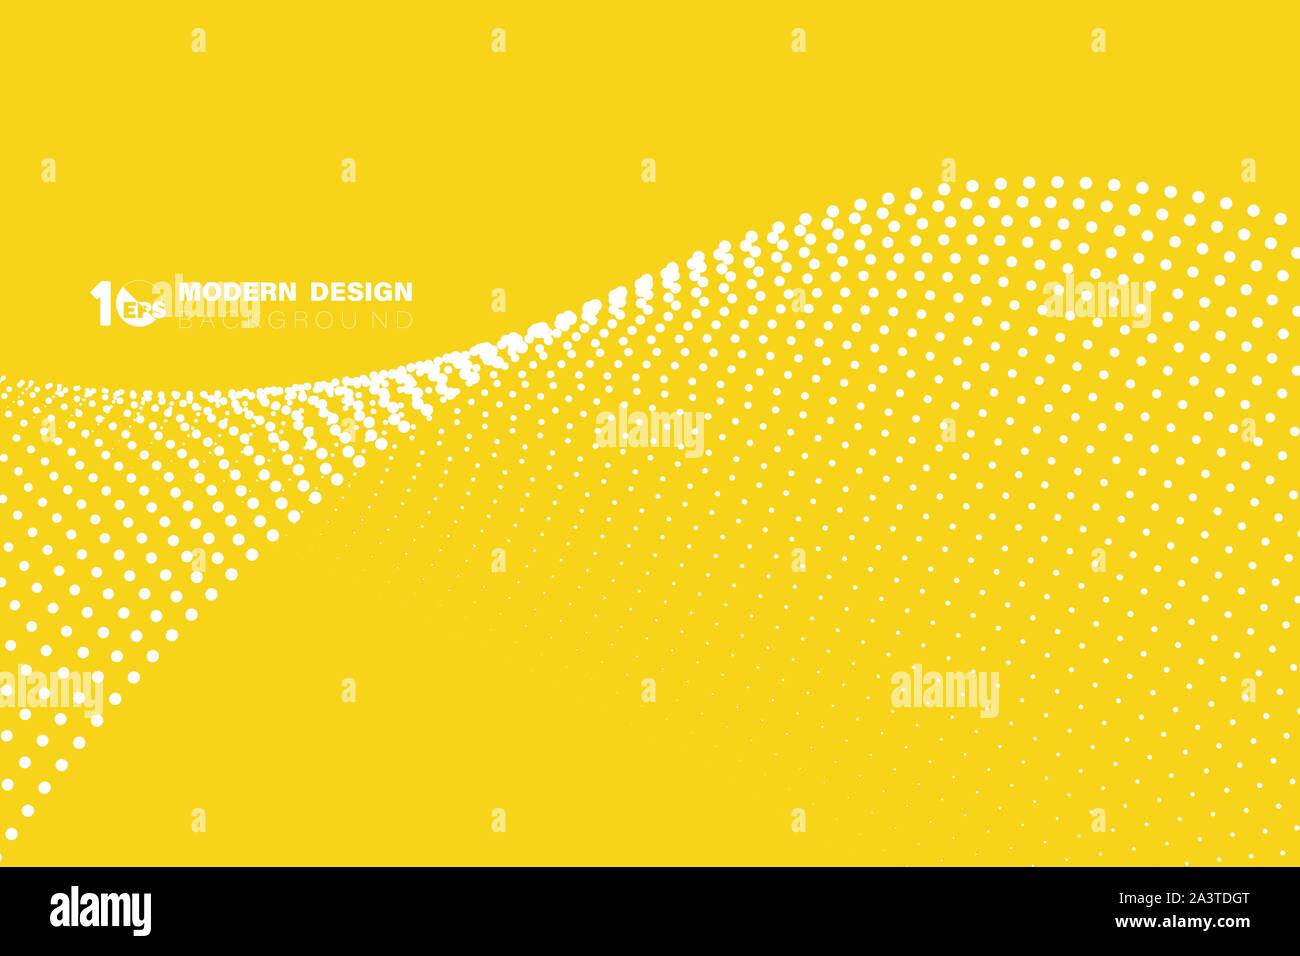 Abstrakte Schlagzeile Abdeckung der gelben minimal Dekorationslinie halftone Stil Hintergrund. Dekoration für Ad, Poster, Vorlage, tech Artwork. Abbildung v Stock Vektor